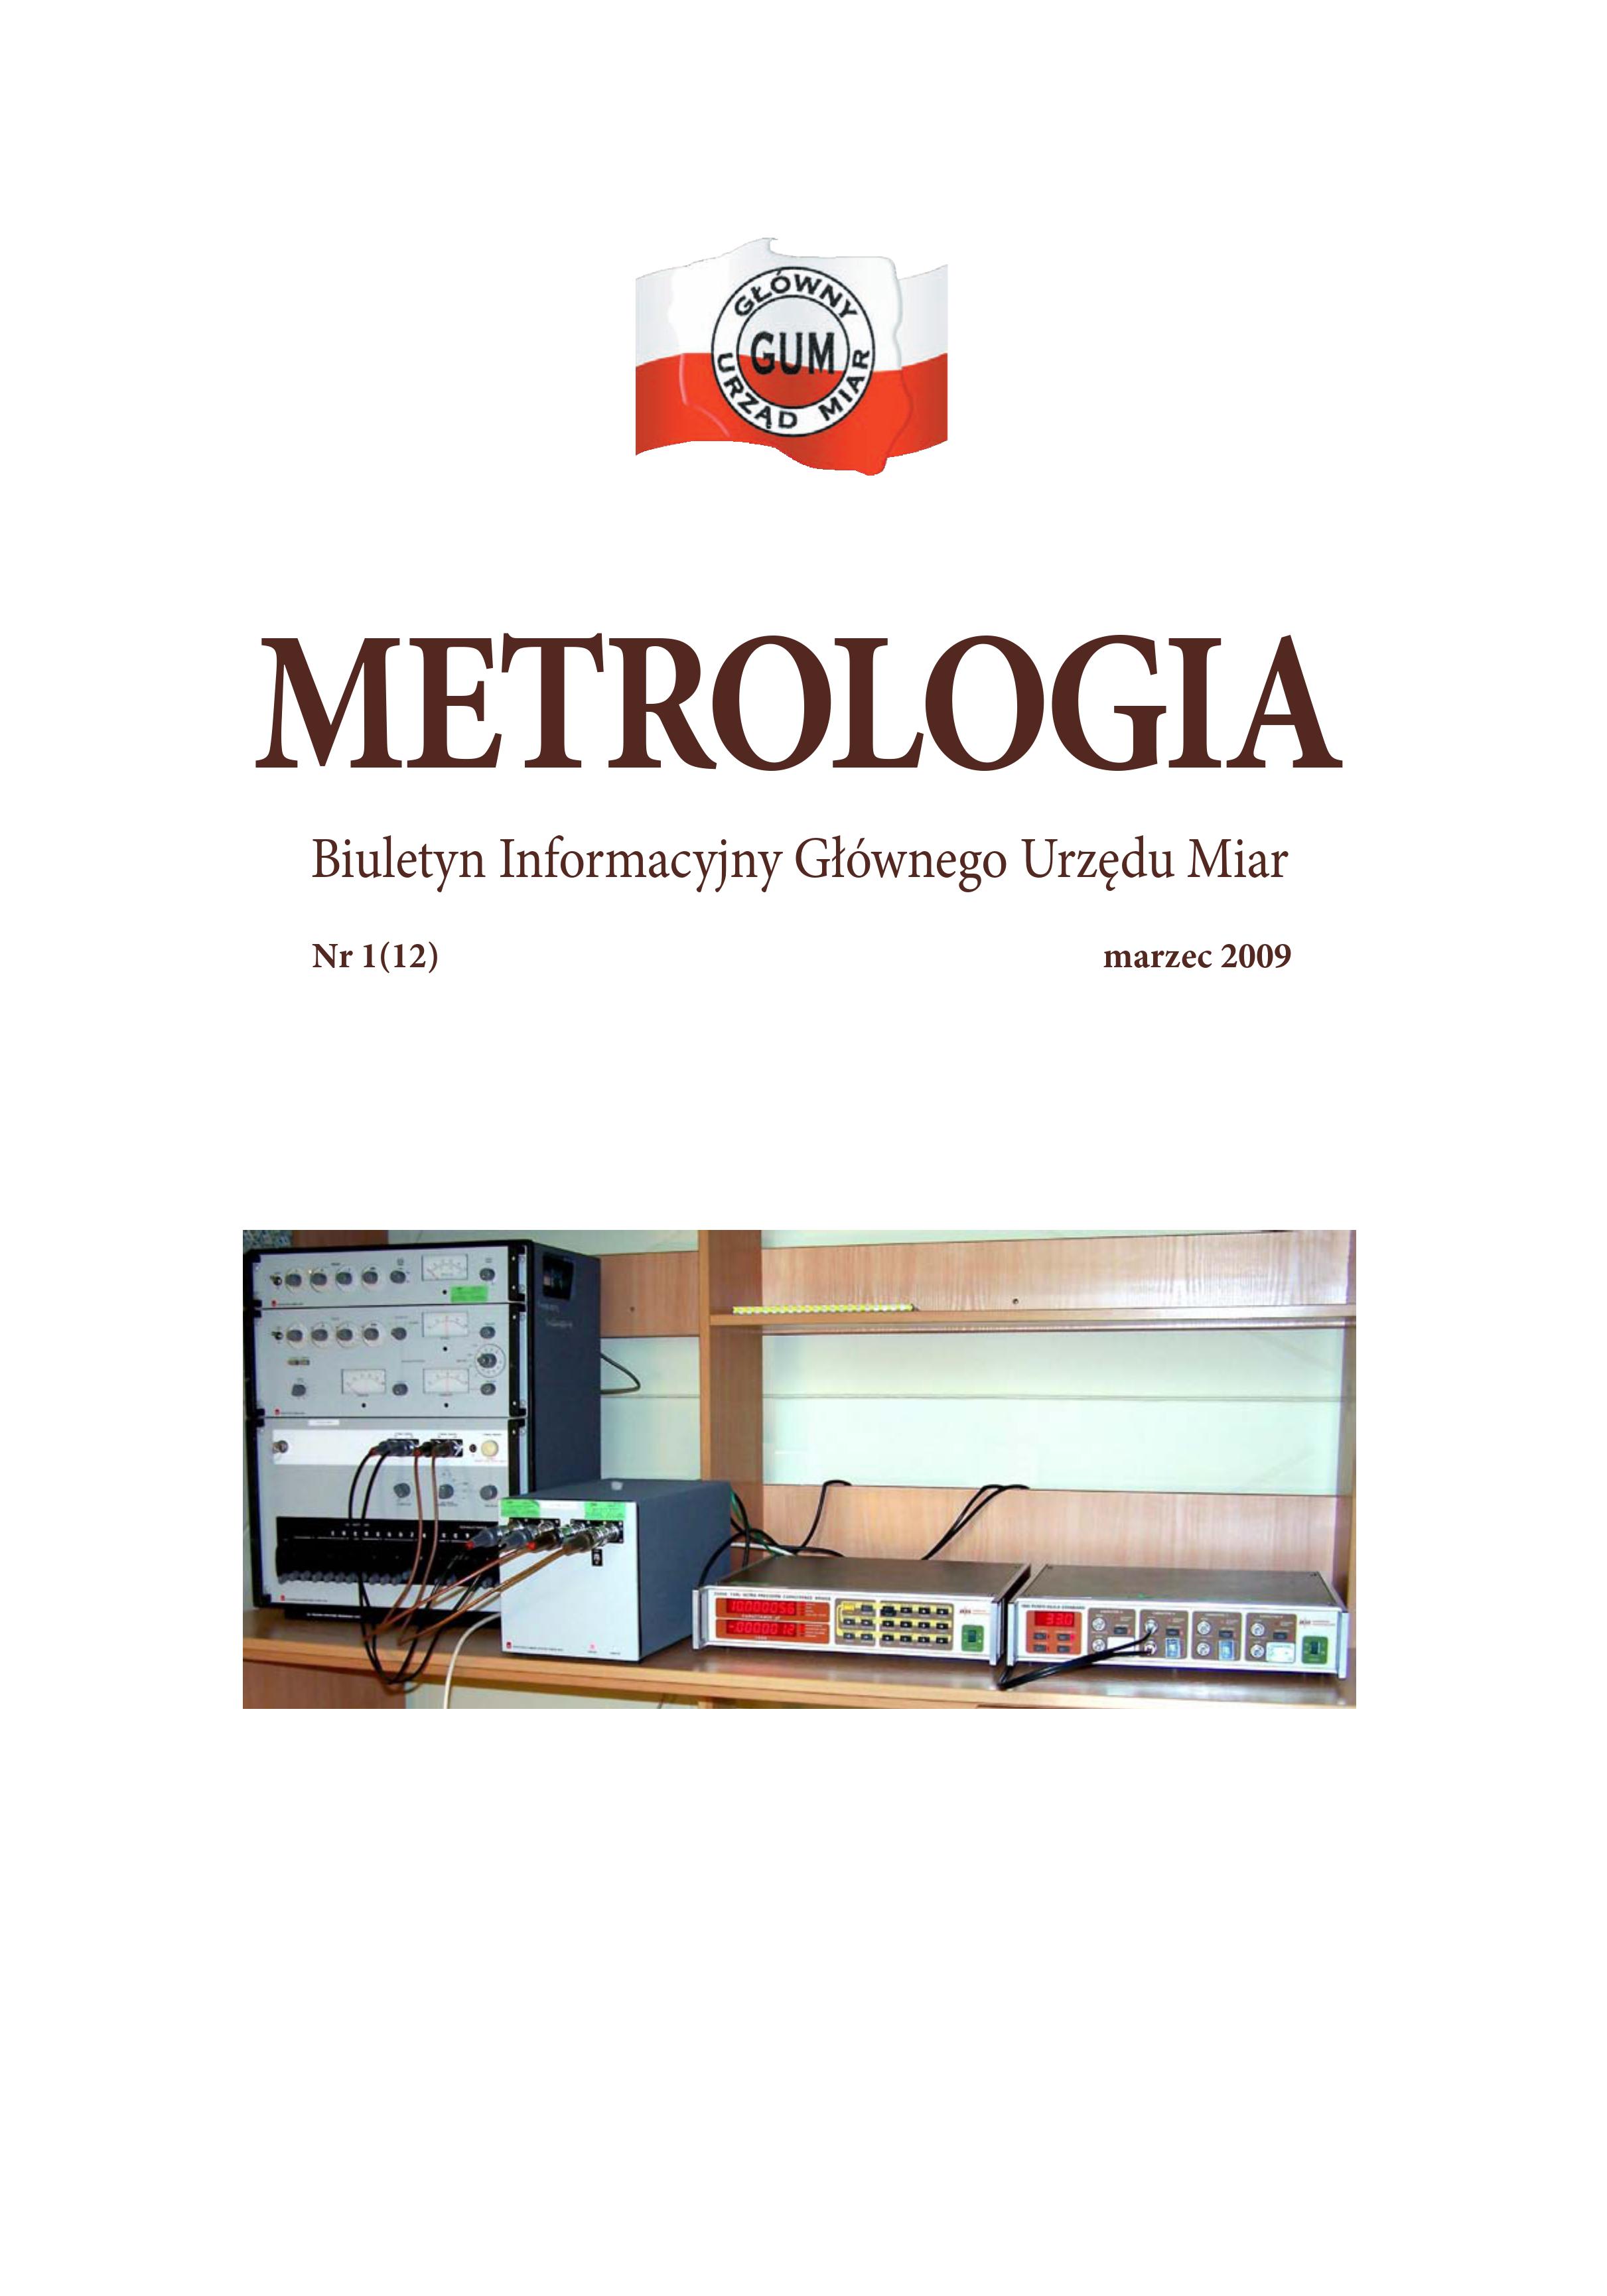 Okładka nr 1 z 2009 r. Biuletynu GUM Metrologia. Na okładce u góry biało-czerwone logo GUM, niżej tytuł Metrologia, a pod nim zdjęcie, na którym widać wnętrze laboratorium ze stanowiskiem pomiarowym usytuowanym na drewnianym blacie.